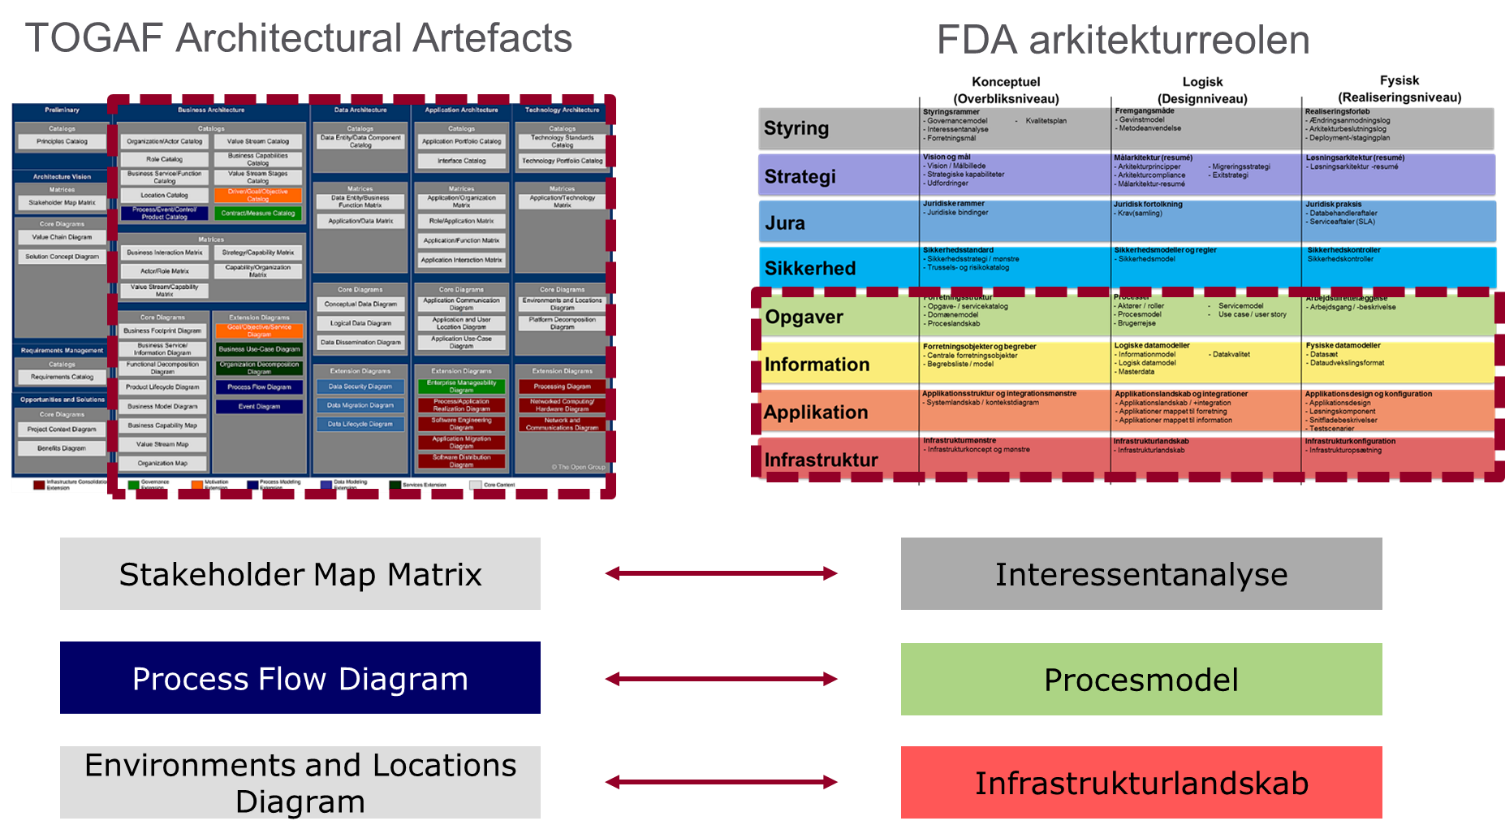 Figur 8 Sammenhæng mellem TOGAF-artefakter og FDA -arkitekturprodukter